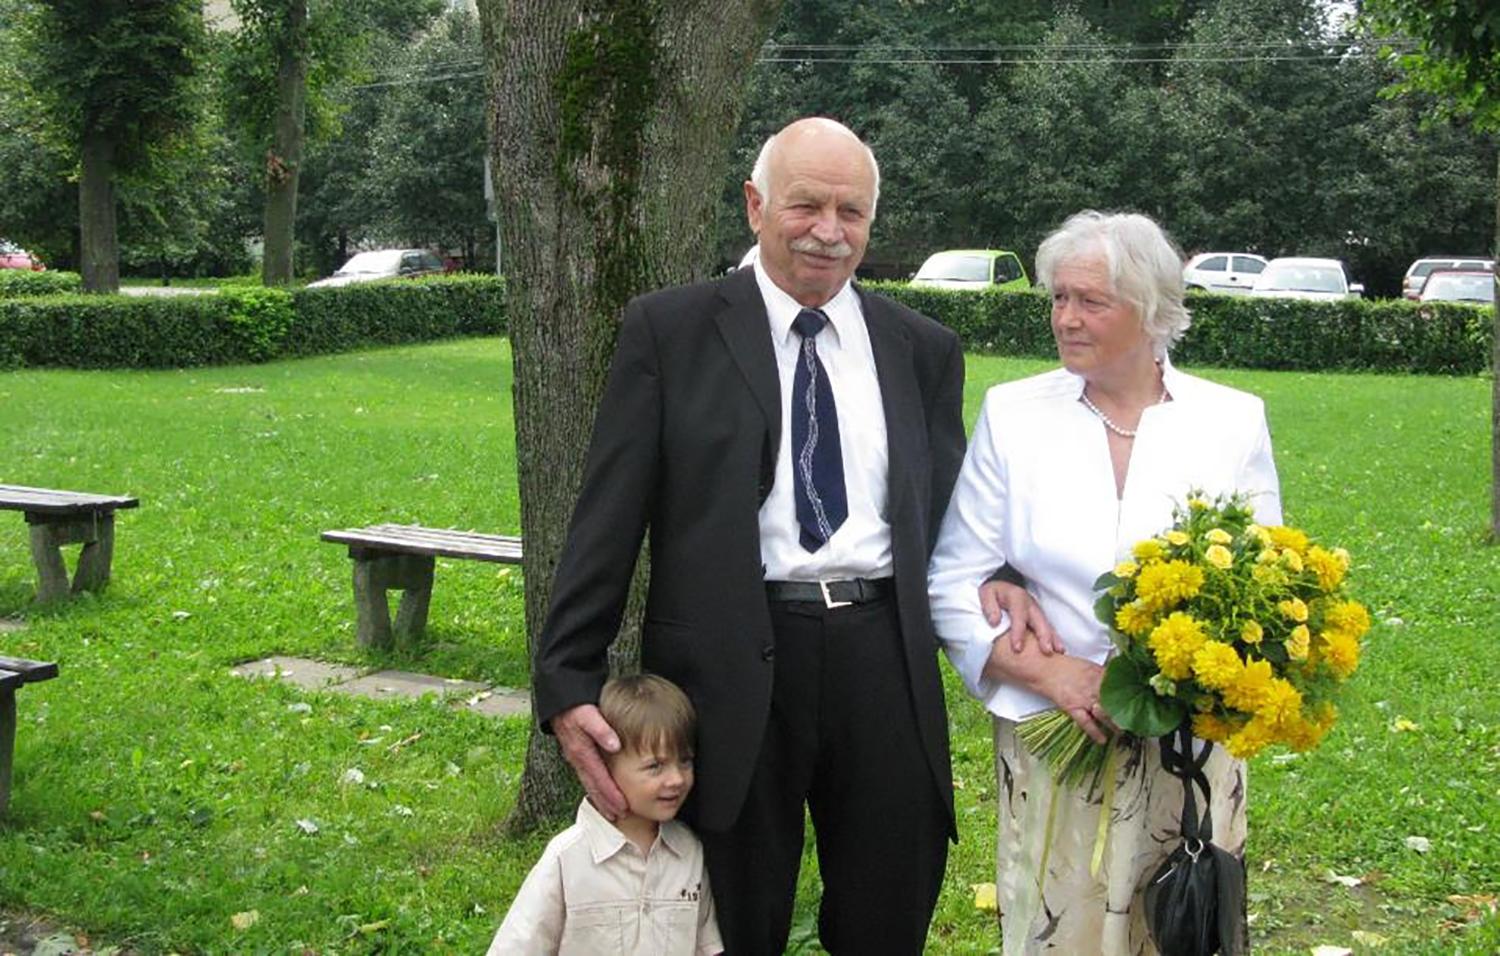 Sutuoktiniai jubiliejus švenčia kartu / Profesorius emeritas Rimvydas Tumas su žmona Onute.